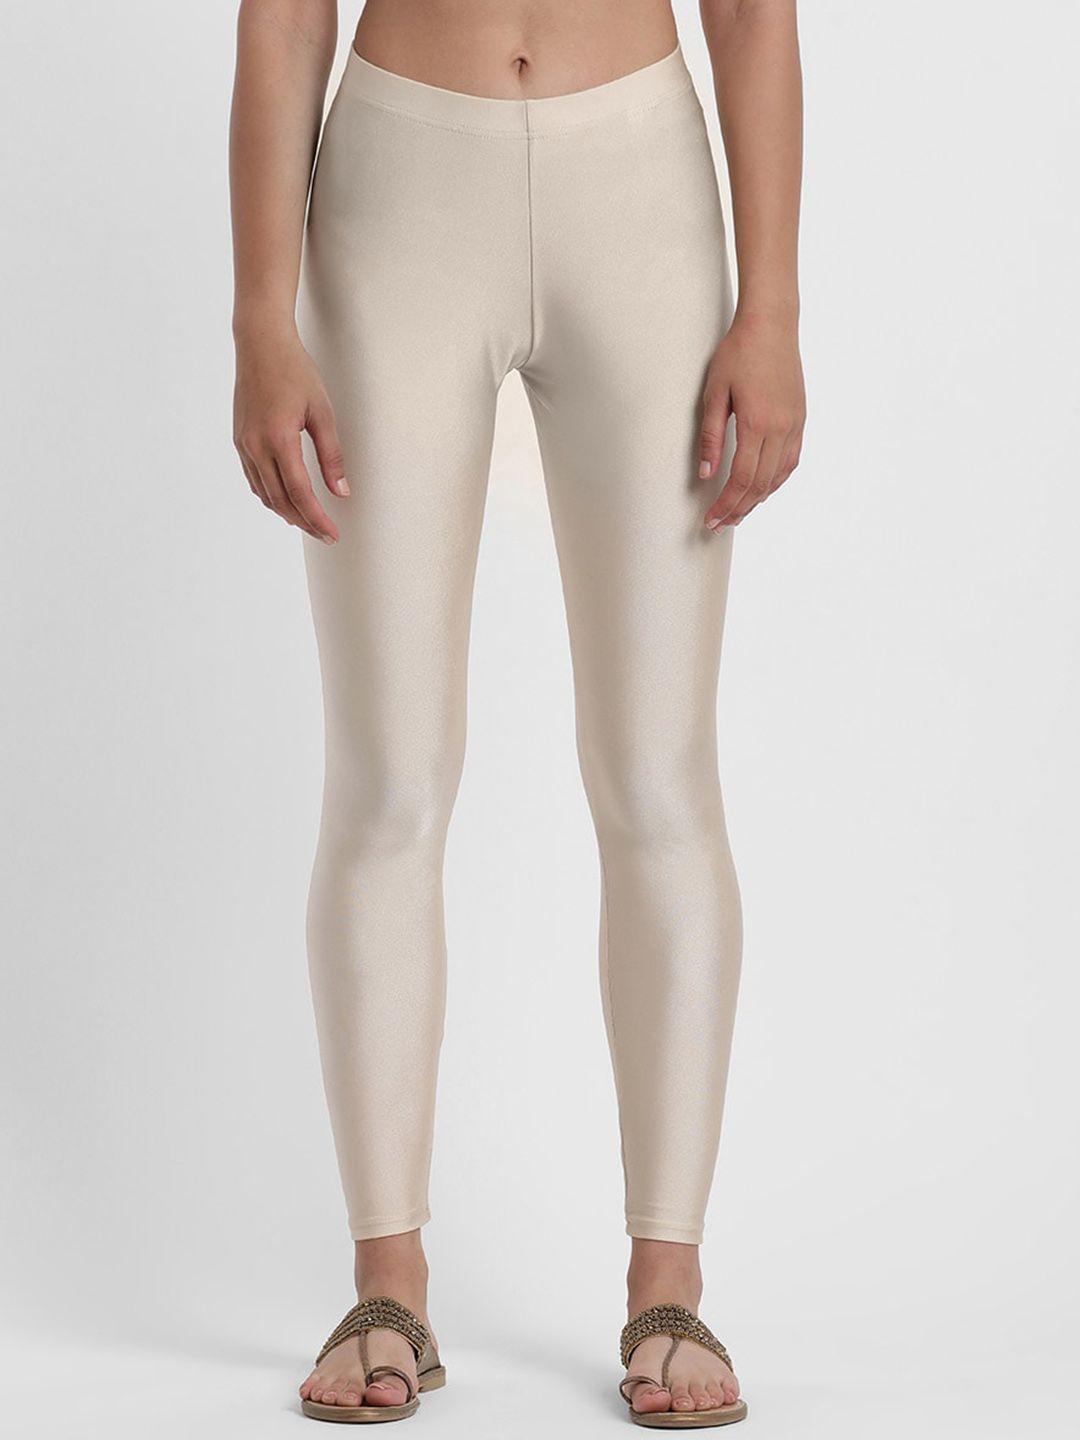 styli women cream-coloured ankle-length mid-rise shimmer nylon leggings